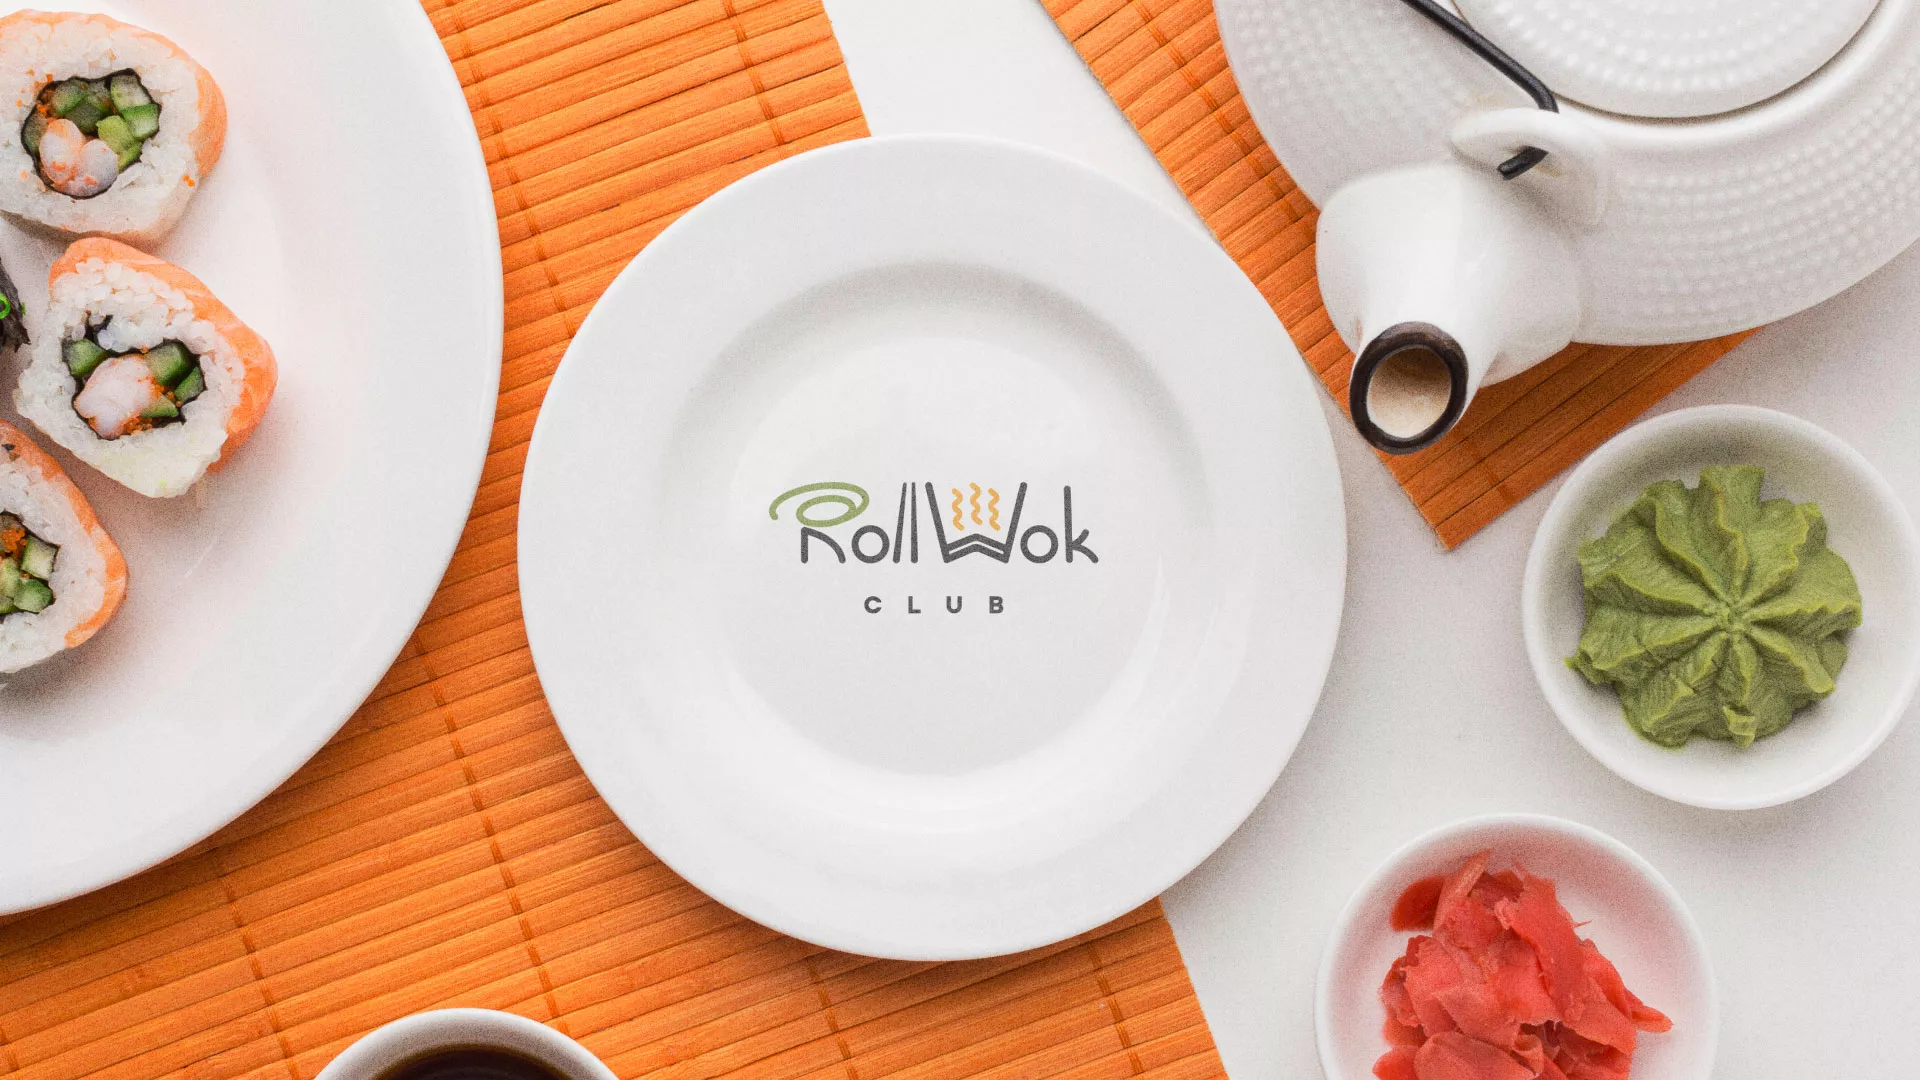 Разработка логотипа и фирменного стиля суши-бара «Roll Wok Club» в Острове